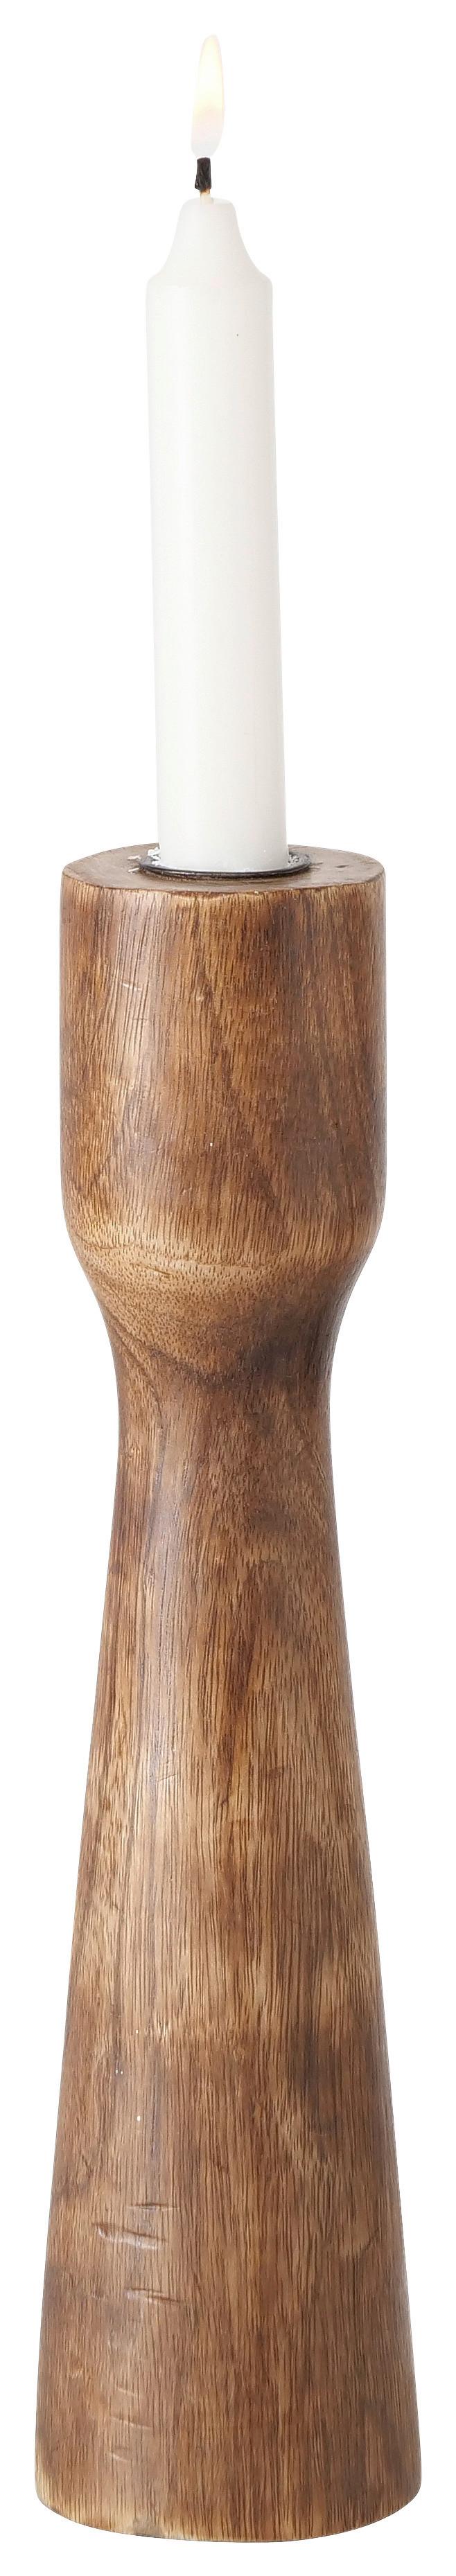 Stojan Na Svíčků Caldeas, V: 30cm - přírodní barvy, Moderní, dřevo (30cm) - Premium Living